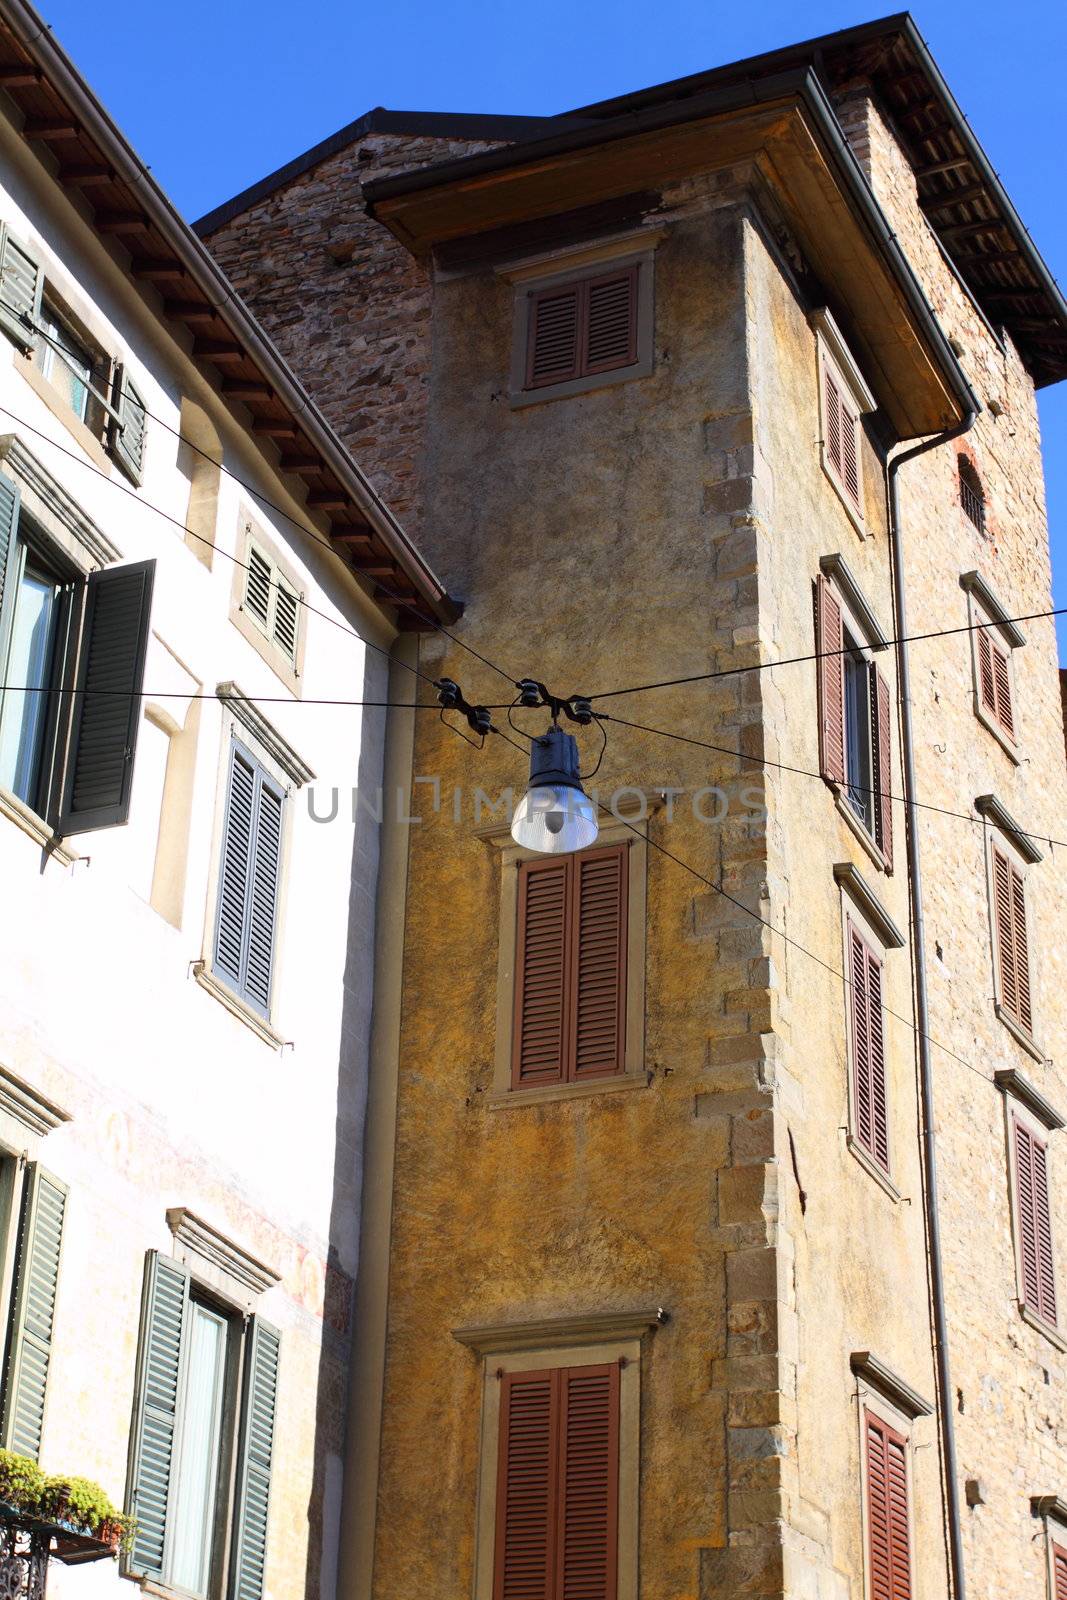 Bergamo building in Italy by mariusz_prusaczyk